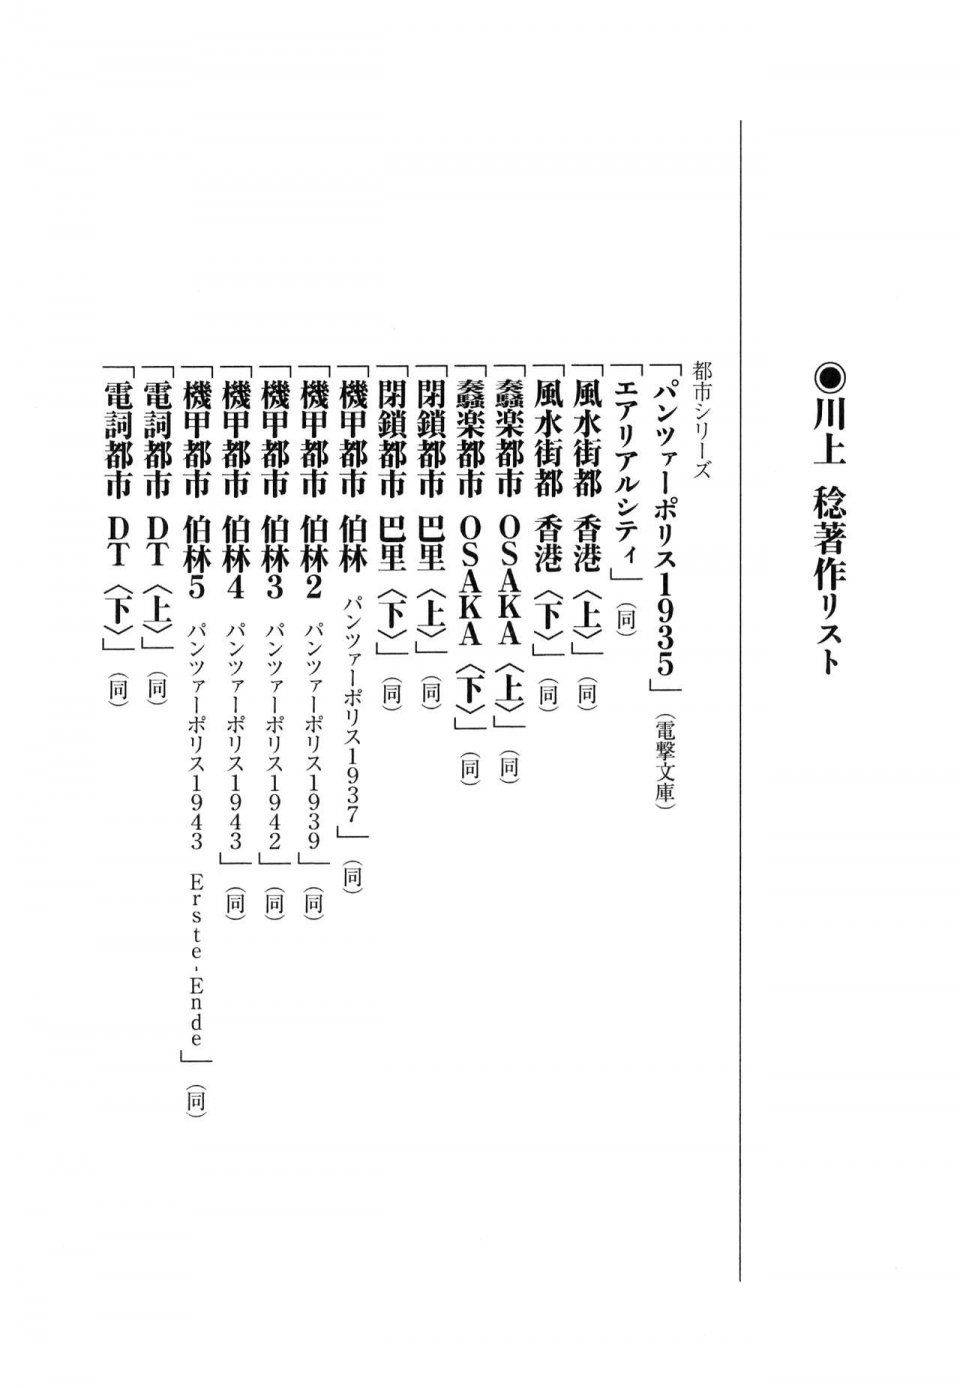 Kyoukai Senjou no Horizon LN Vol 16(7A) - Photo #802